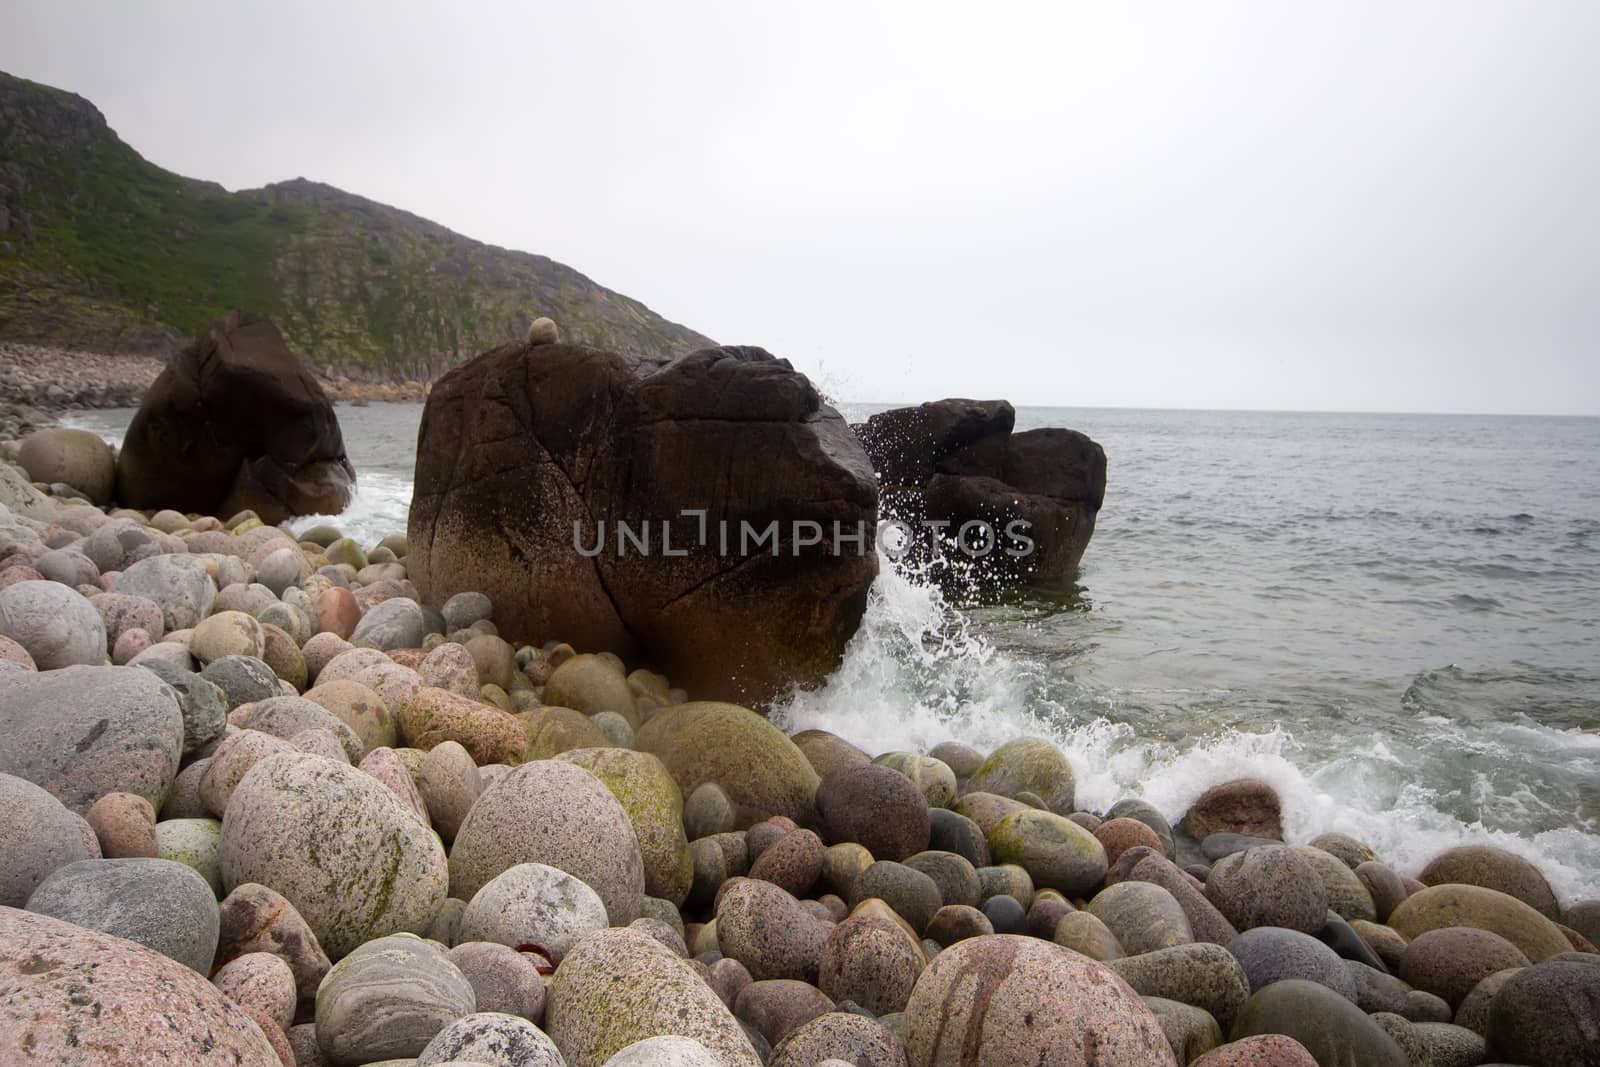 stony beach on the North Sea